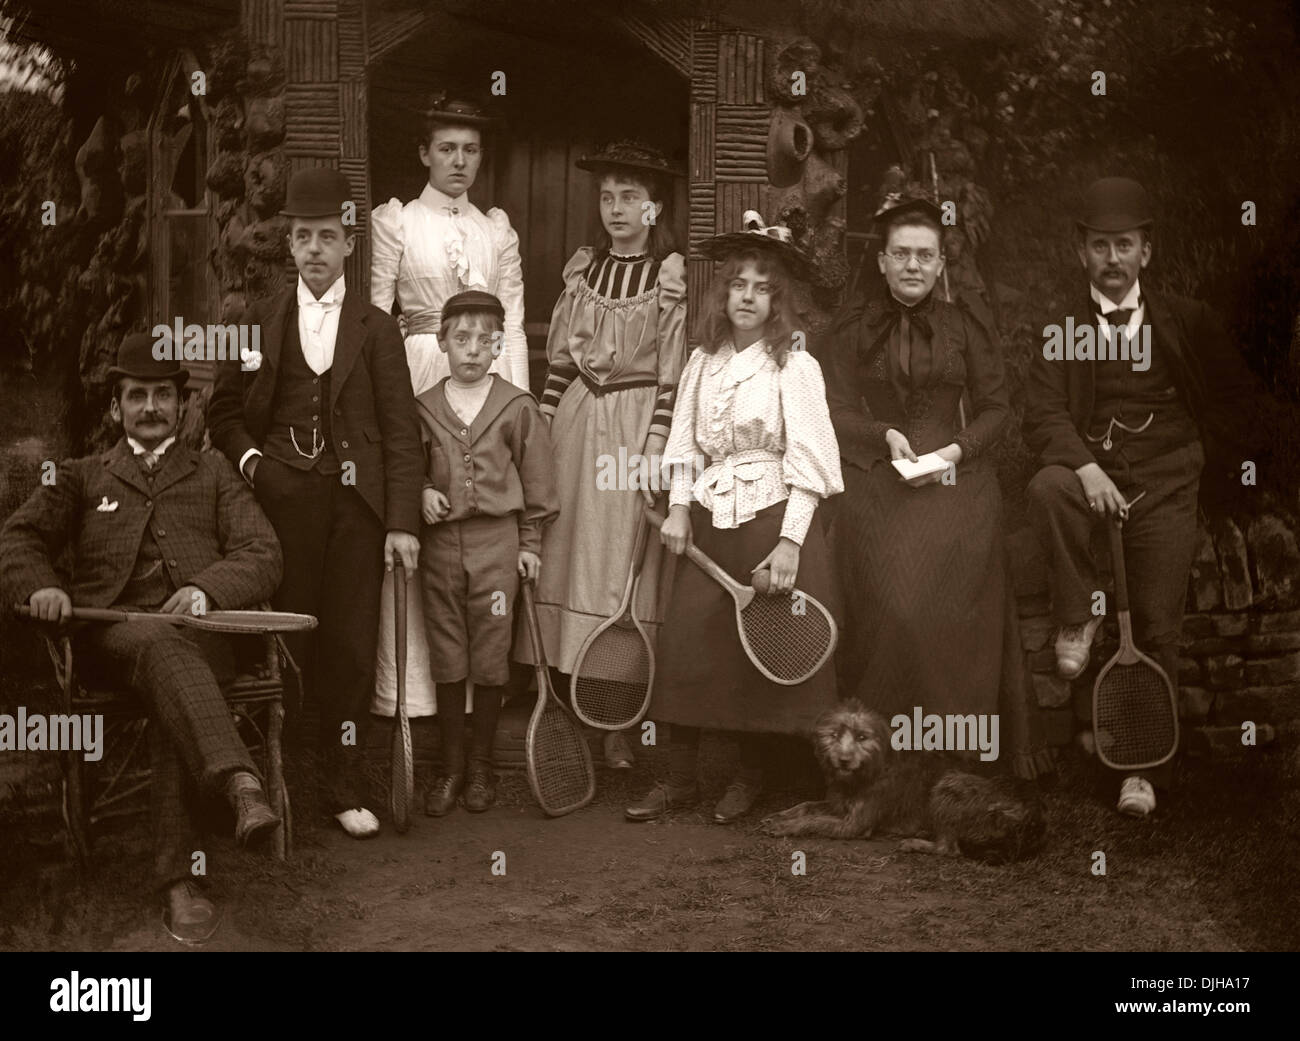 Eine Gruppe von Tennisspielern in der viktorianischen oder edwardianischen Ära um 1900. Intelligente Kleidung für die Wiedergabe von Sport, einschließlich Hüte! Stockfoto